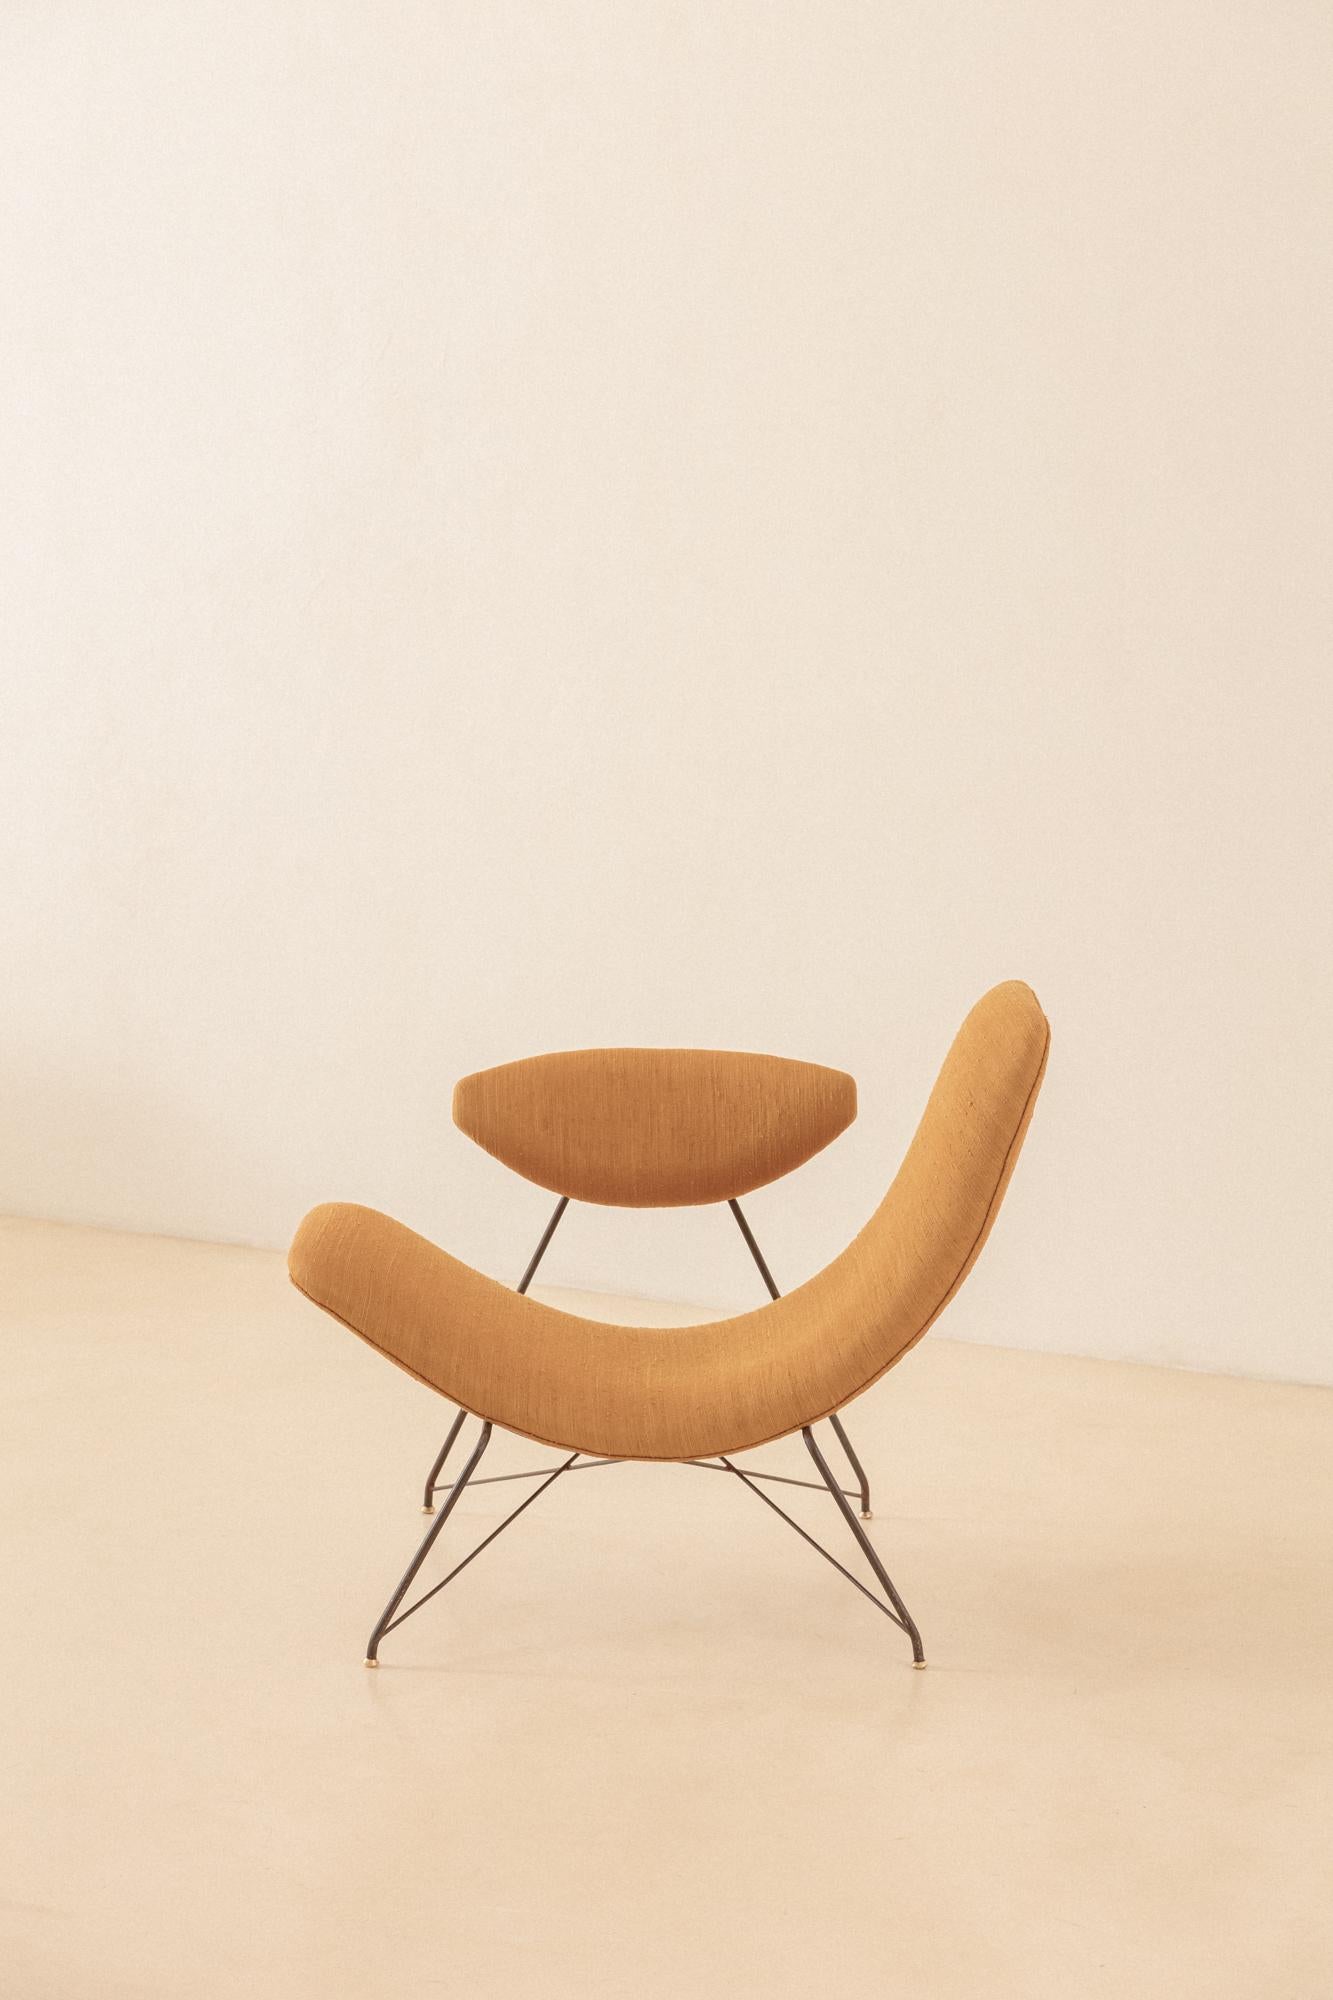 Martin Eisler diseñó este escultural sillón en 1955. Esta pieza se considera uno de los sillones más icónicos del Diseño Moderno brasileño. La singularidad de este sillón reside en varias cualidades. En primer lugar, la forma en sí; provocativa,